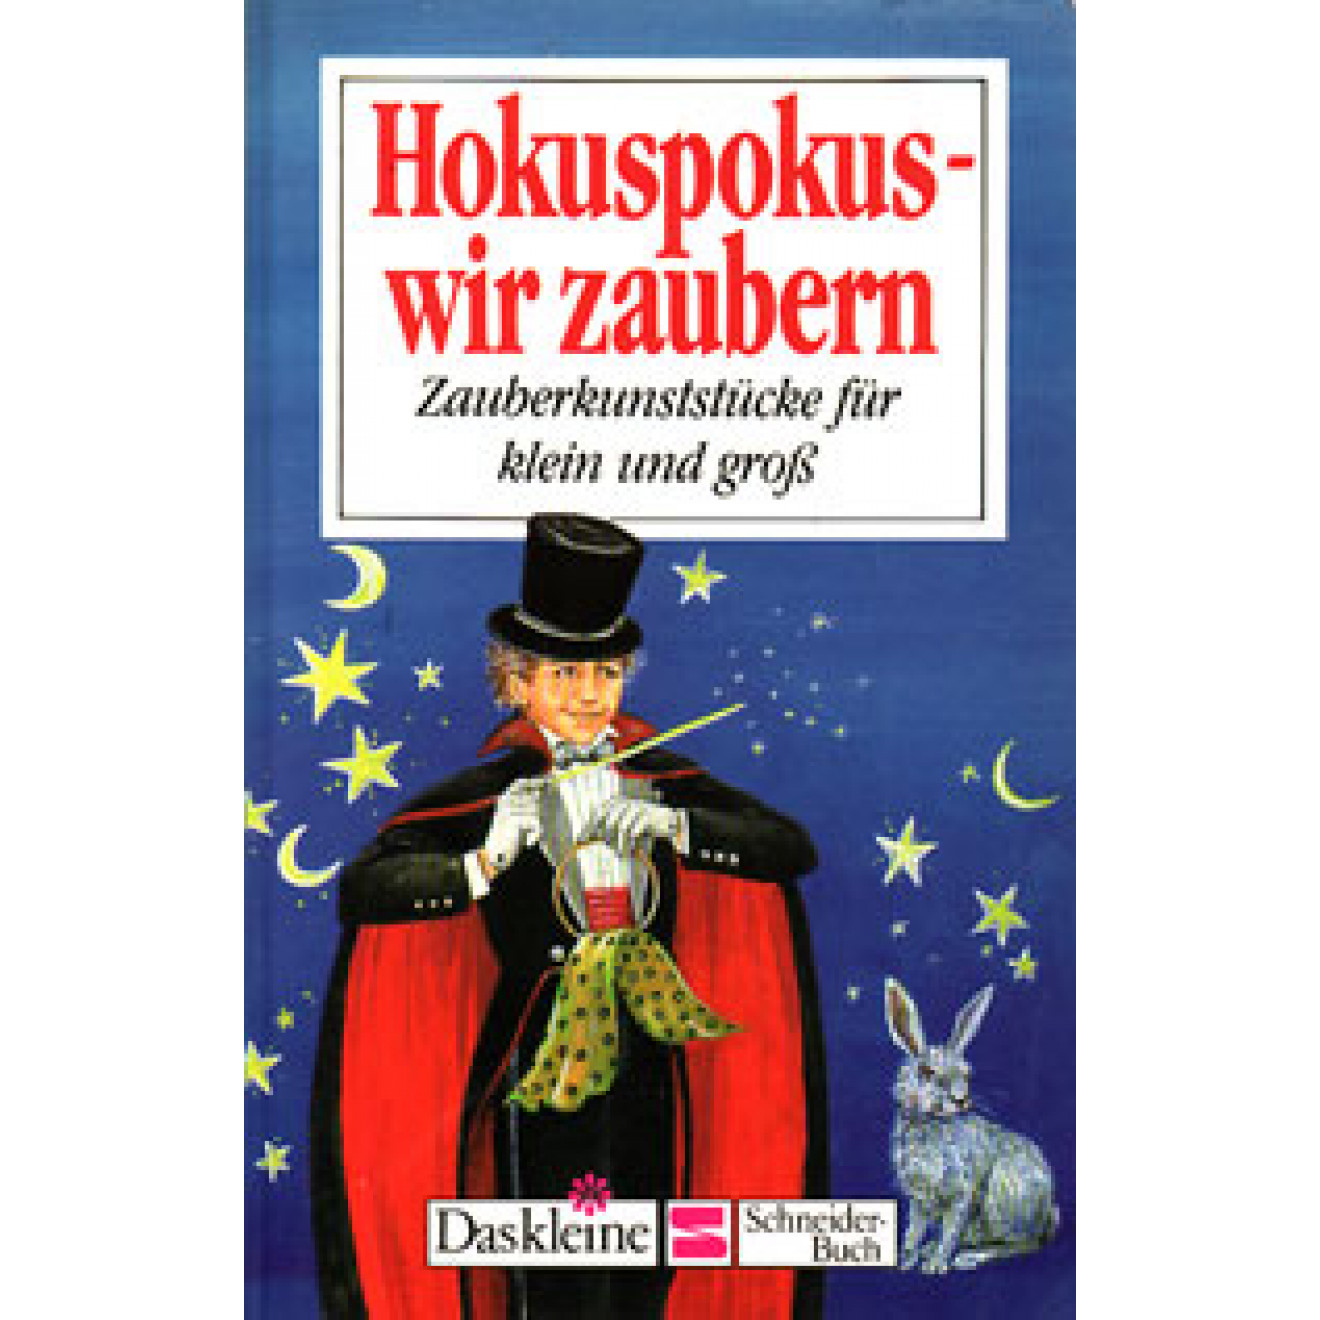 Hokuspokus - Wir zaubern (1988)